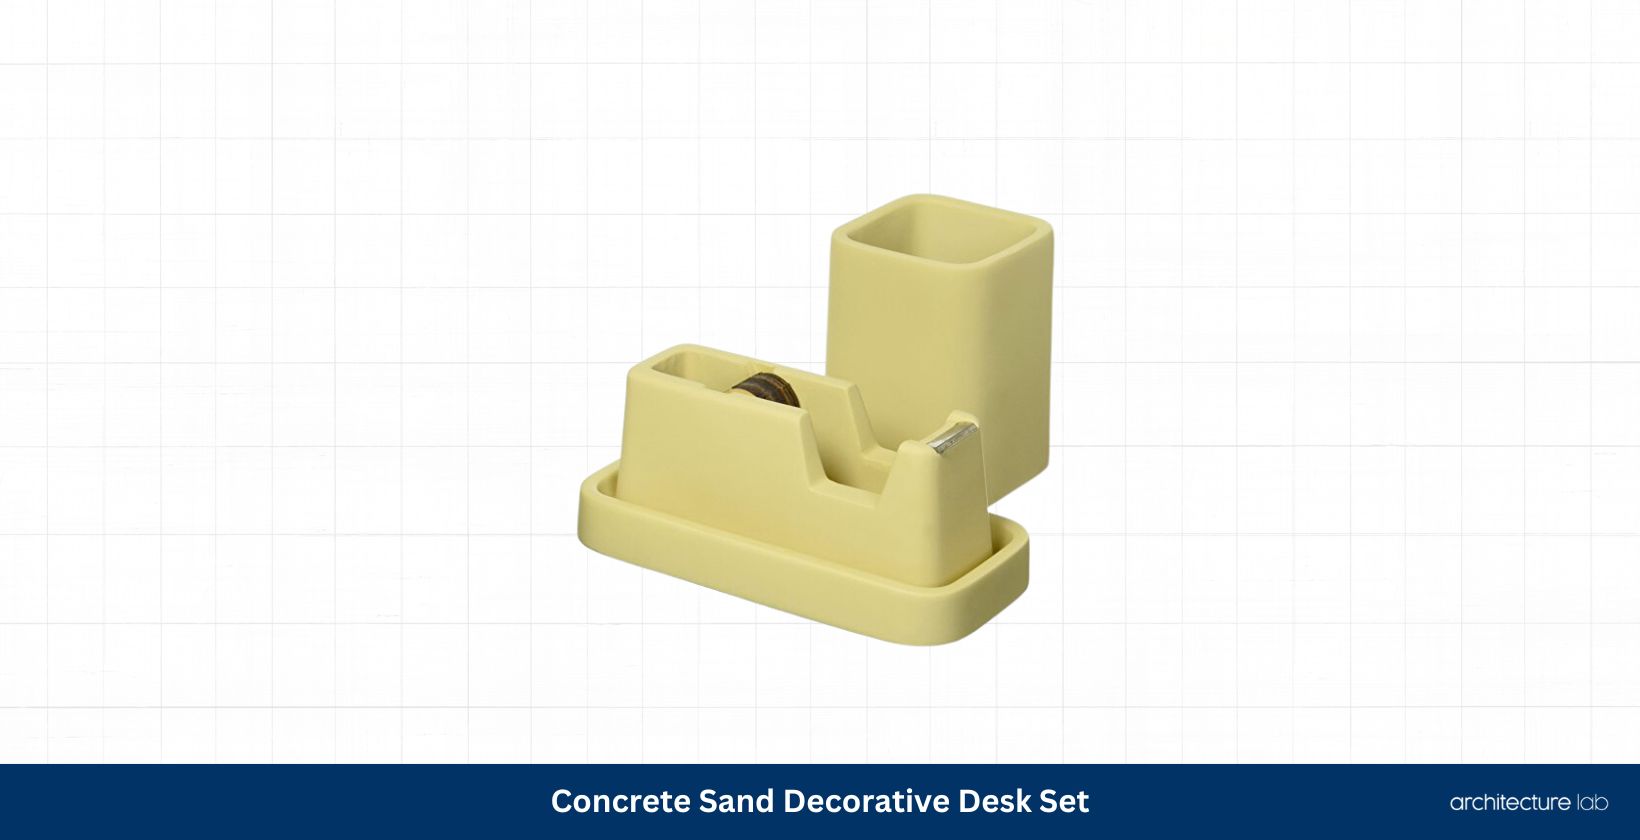 Concrete sand decorative desk set